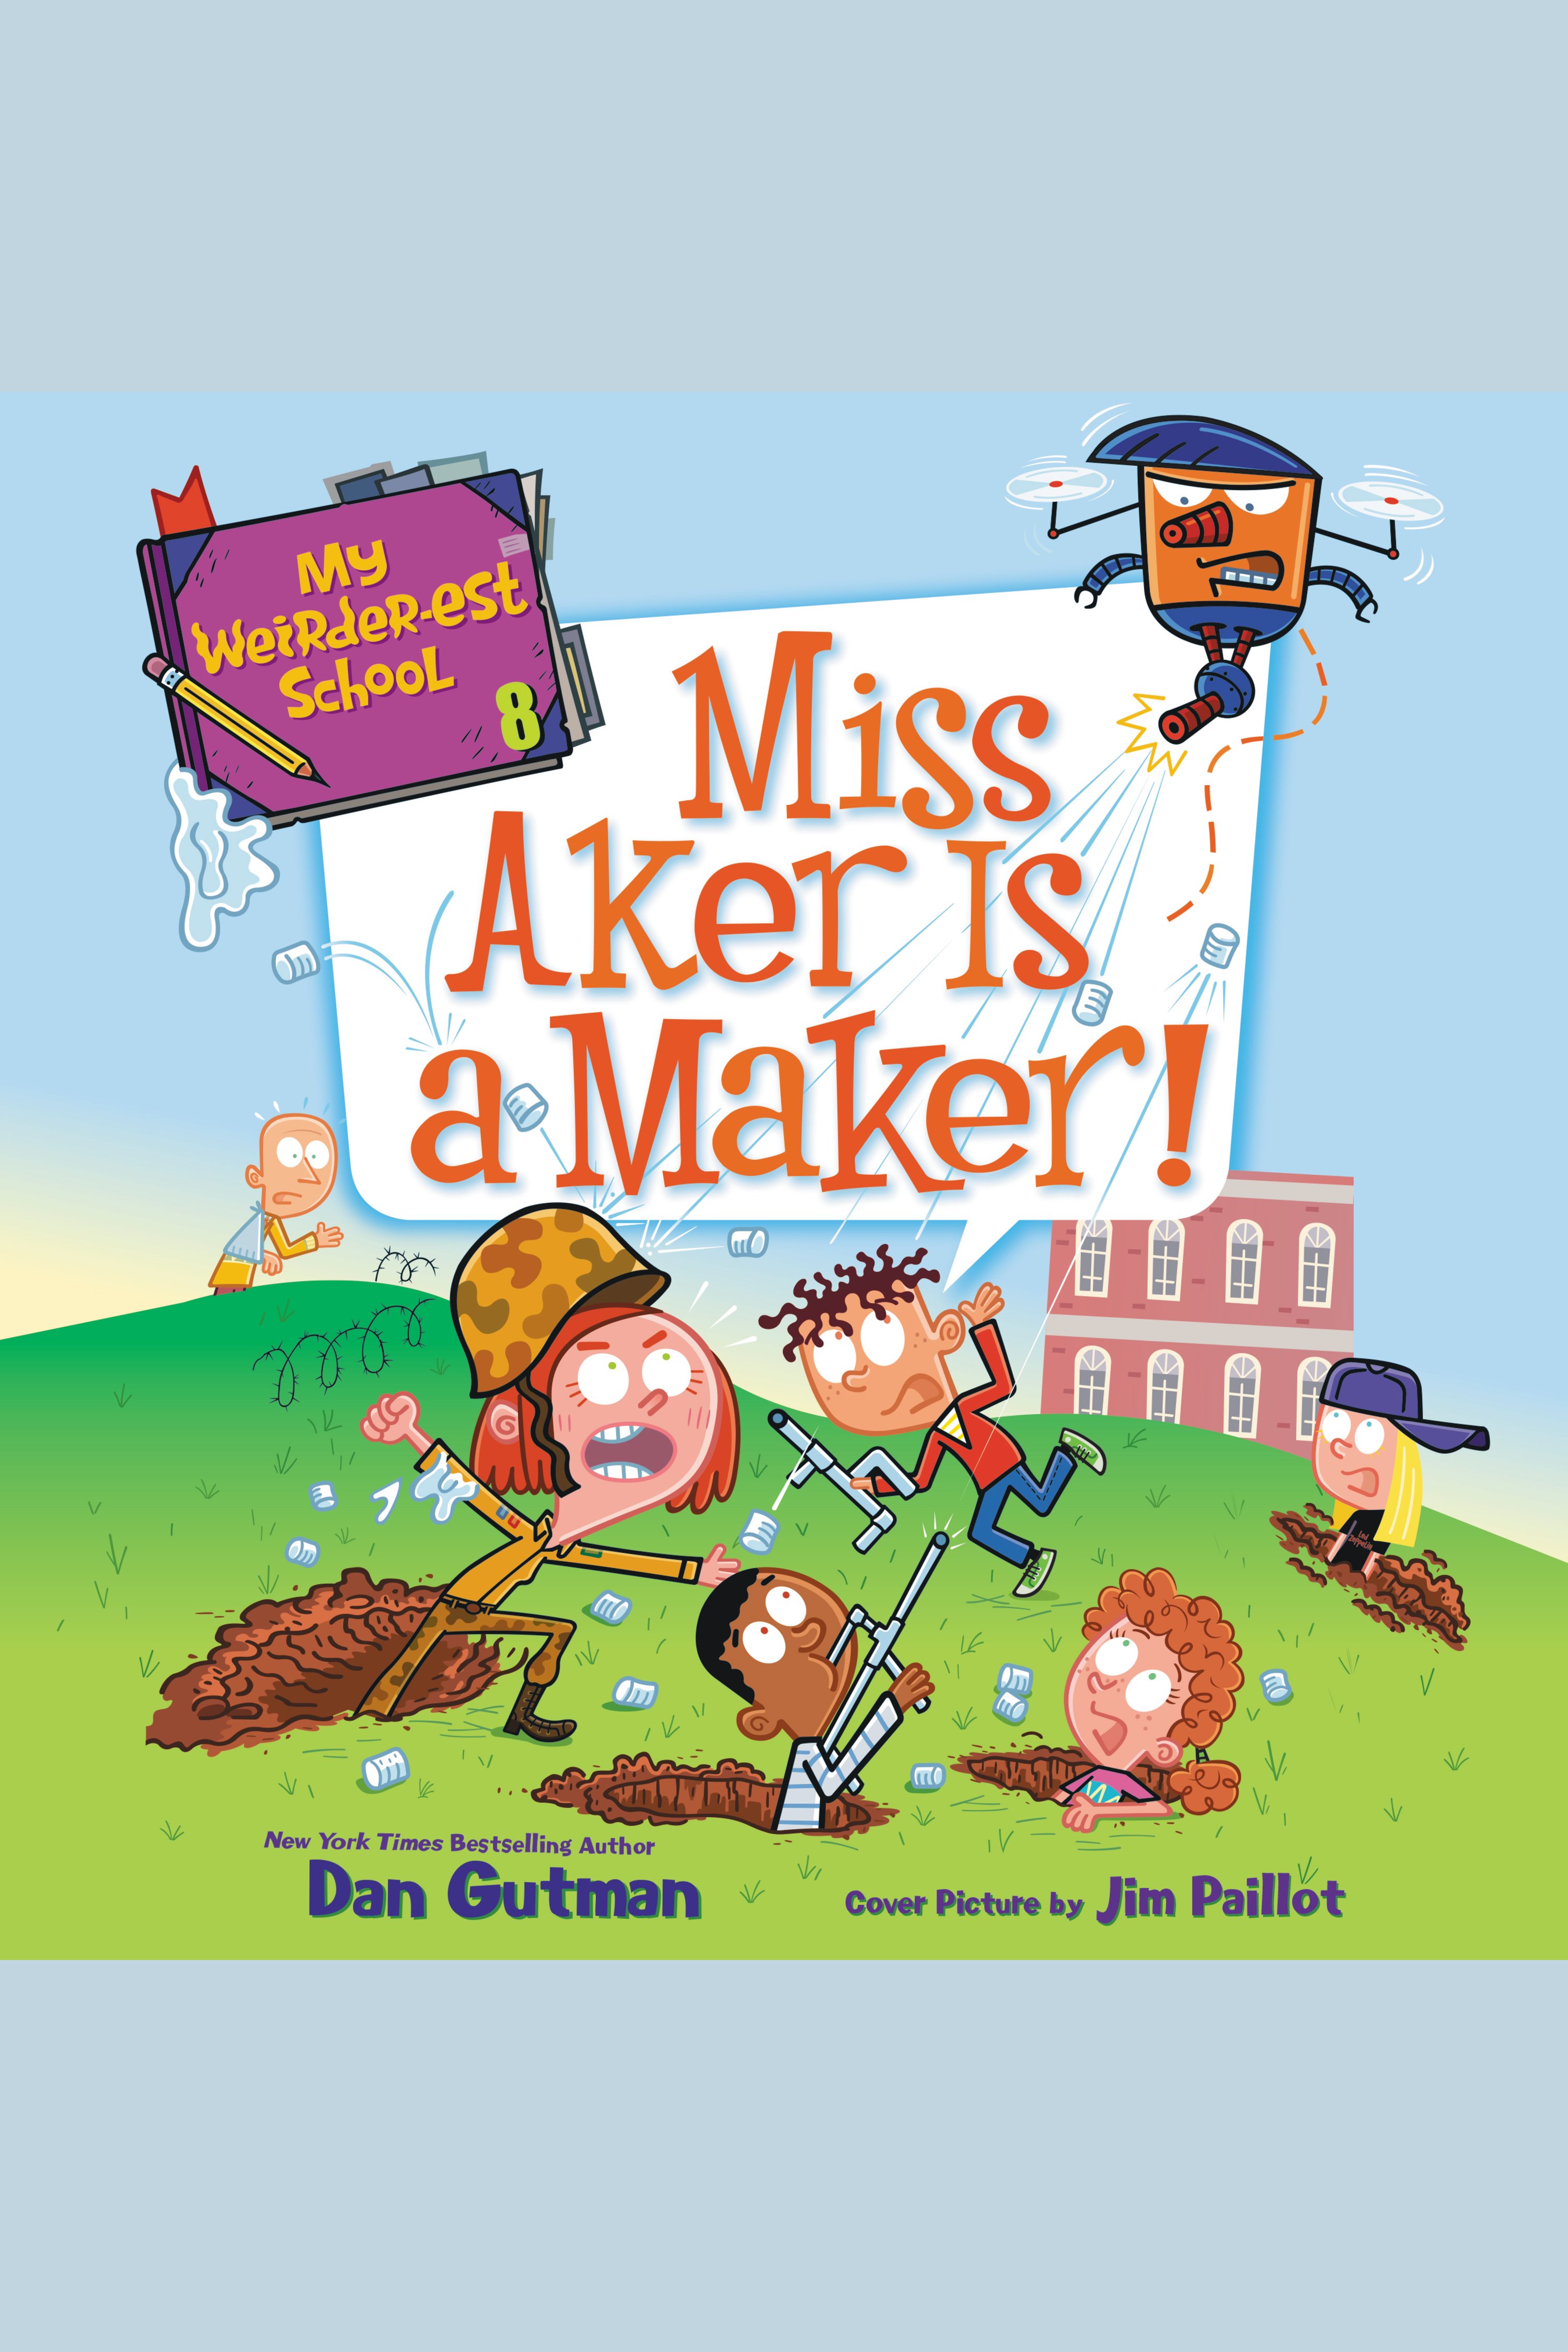 My Weirder-est School #8: Miss Aker Is a Maker! cover image